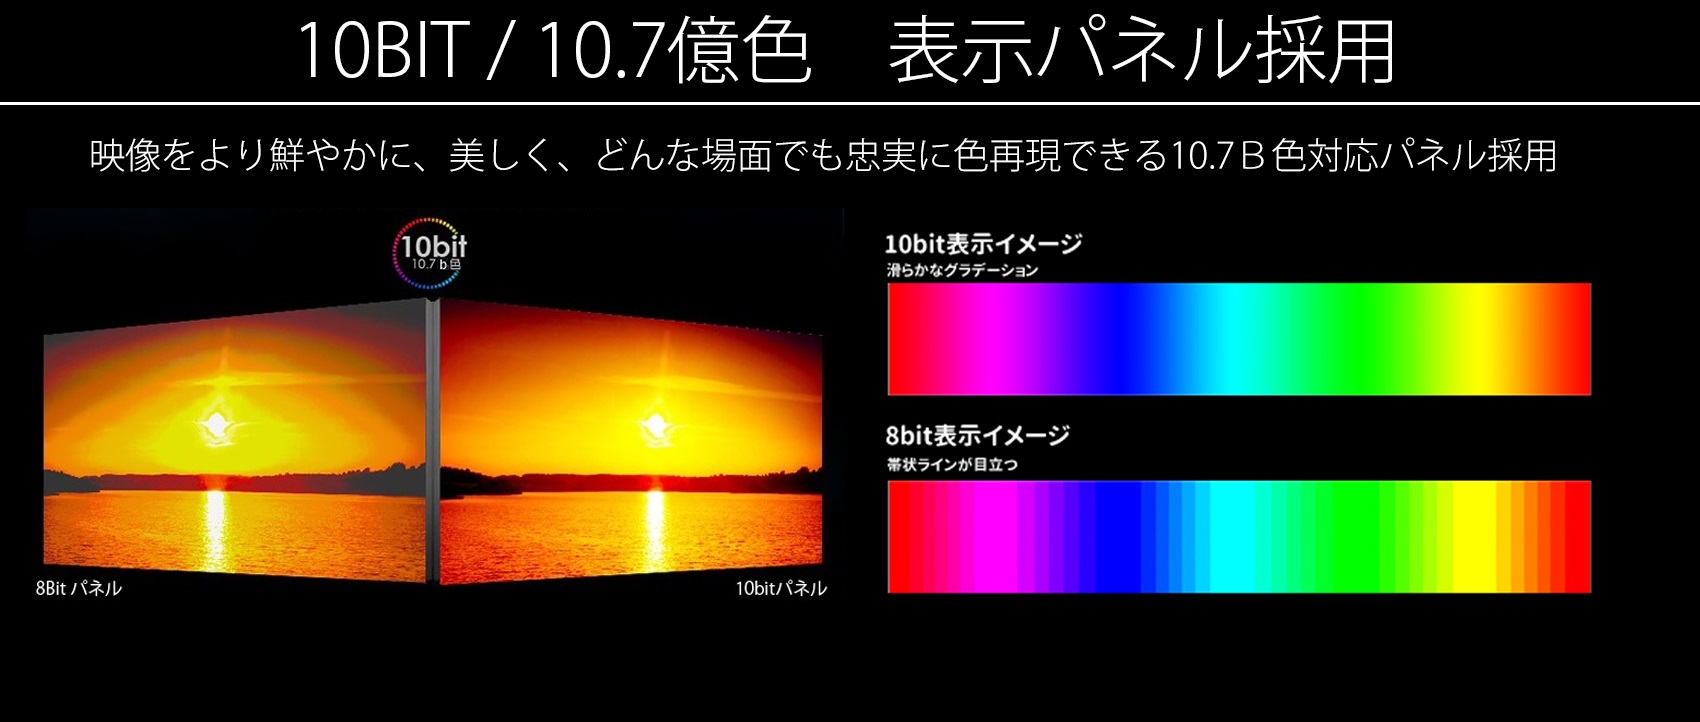 10bit パネル 1.07b色　パネル採用 映像をより鮮やかに、美しく、どんな場面でも忠実な色再現できる1.07B色対応パネル採用。